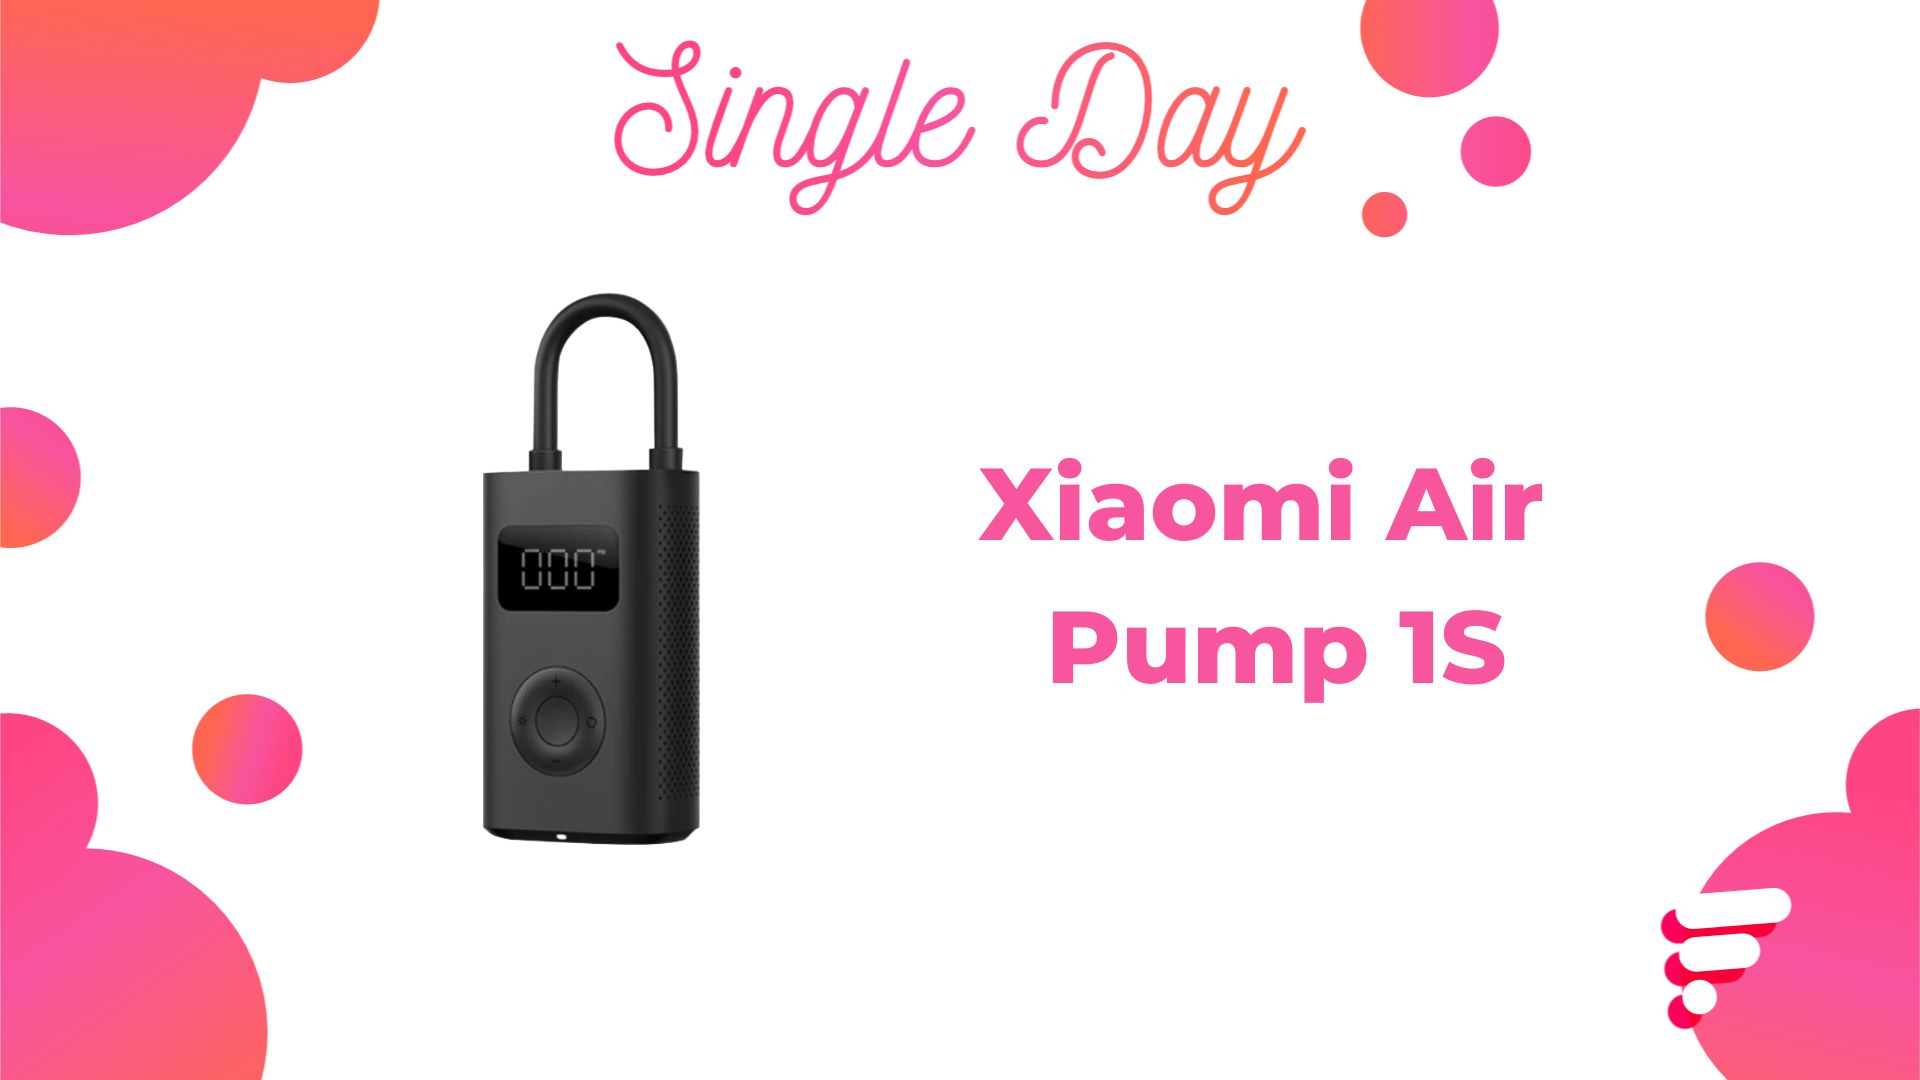 Pompe à air électrique Xiaomi Mija Air Pump 2 –